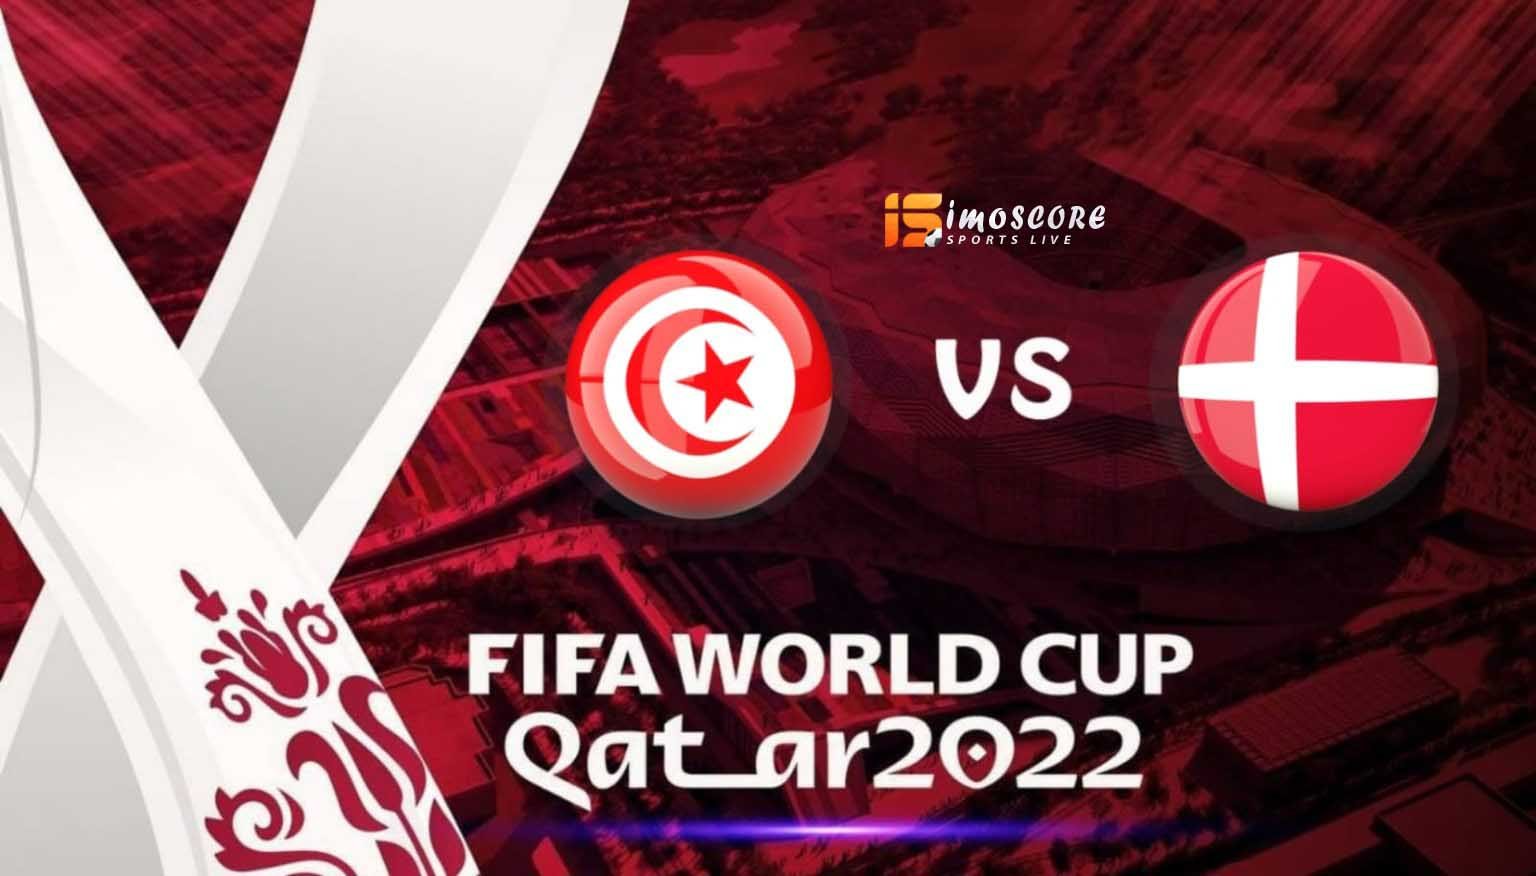 الرسمية لمنتخبي الدنمارك وتونس كأس العالم 2022 | التشكيلة الرسمية لمنتخبي الدنمارك وتونس في كأس العالم 2022